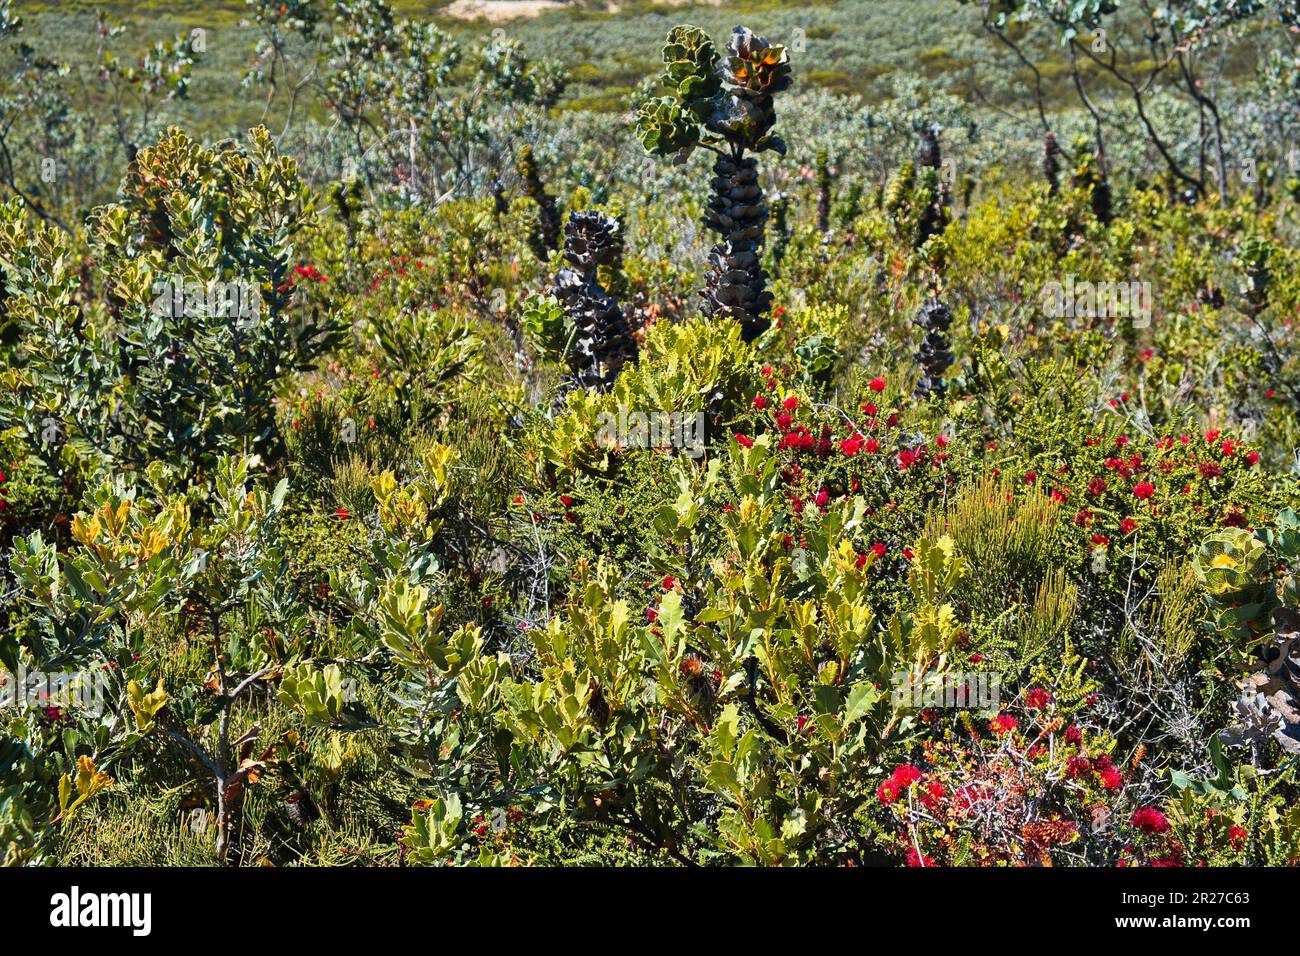 Comunità di piante con hakea reale, Barrens regelia e banksia di quercia-leaved nel Fitzgerald River National Park, Australia Occidentale Foto Stock